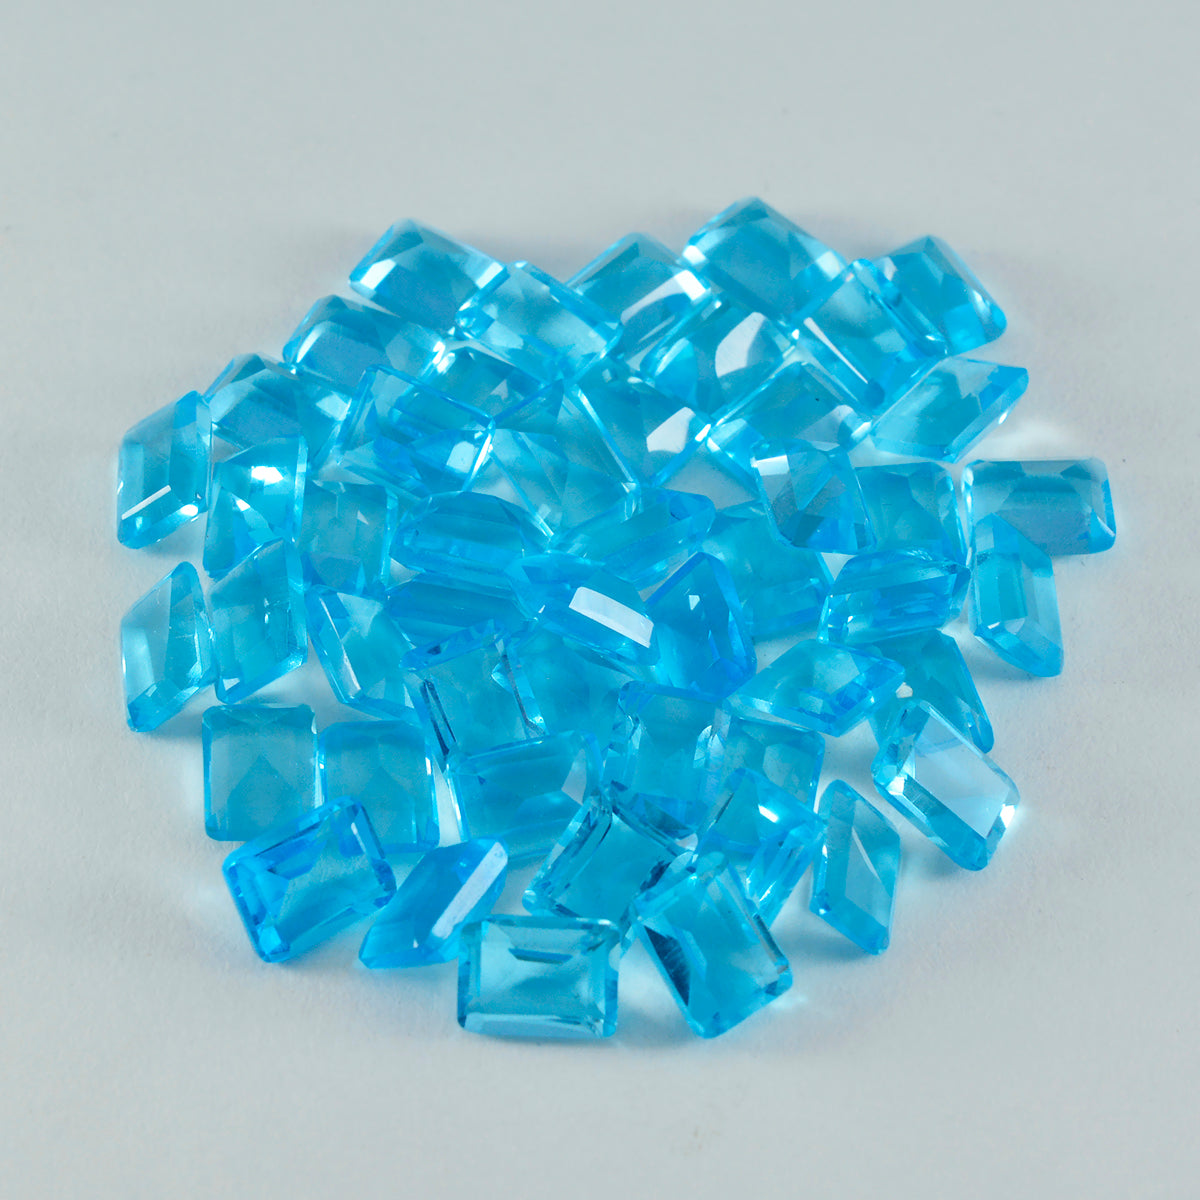 riyogems 1шт голубой топаз cz ограненный 5х7 мм восьмиугольная форма + качественные драгоценные камни